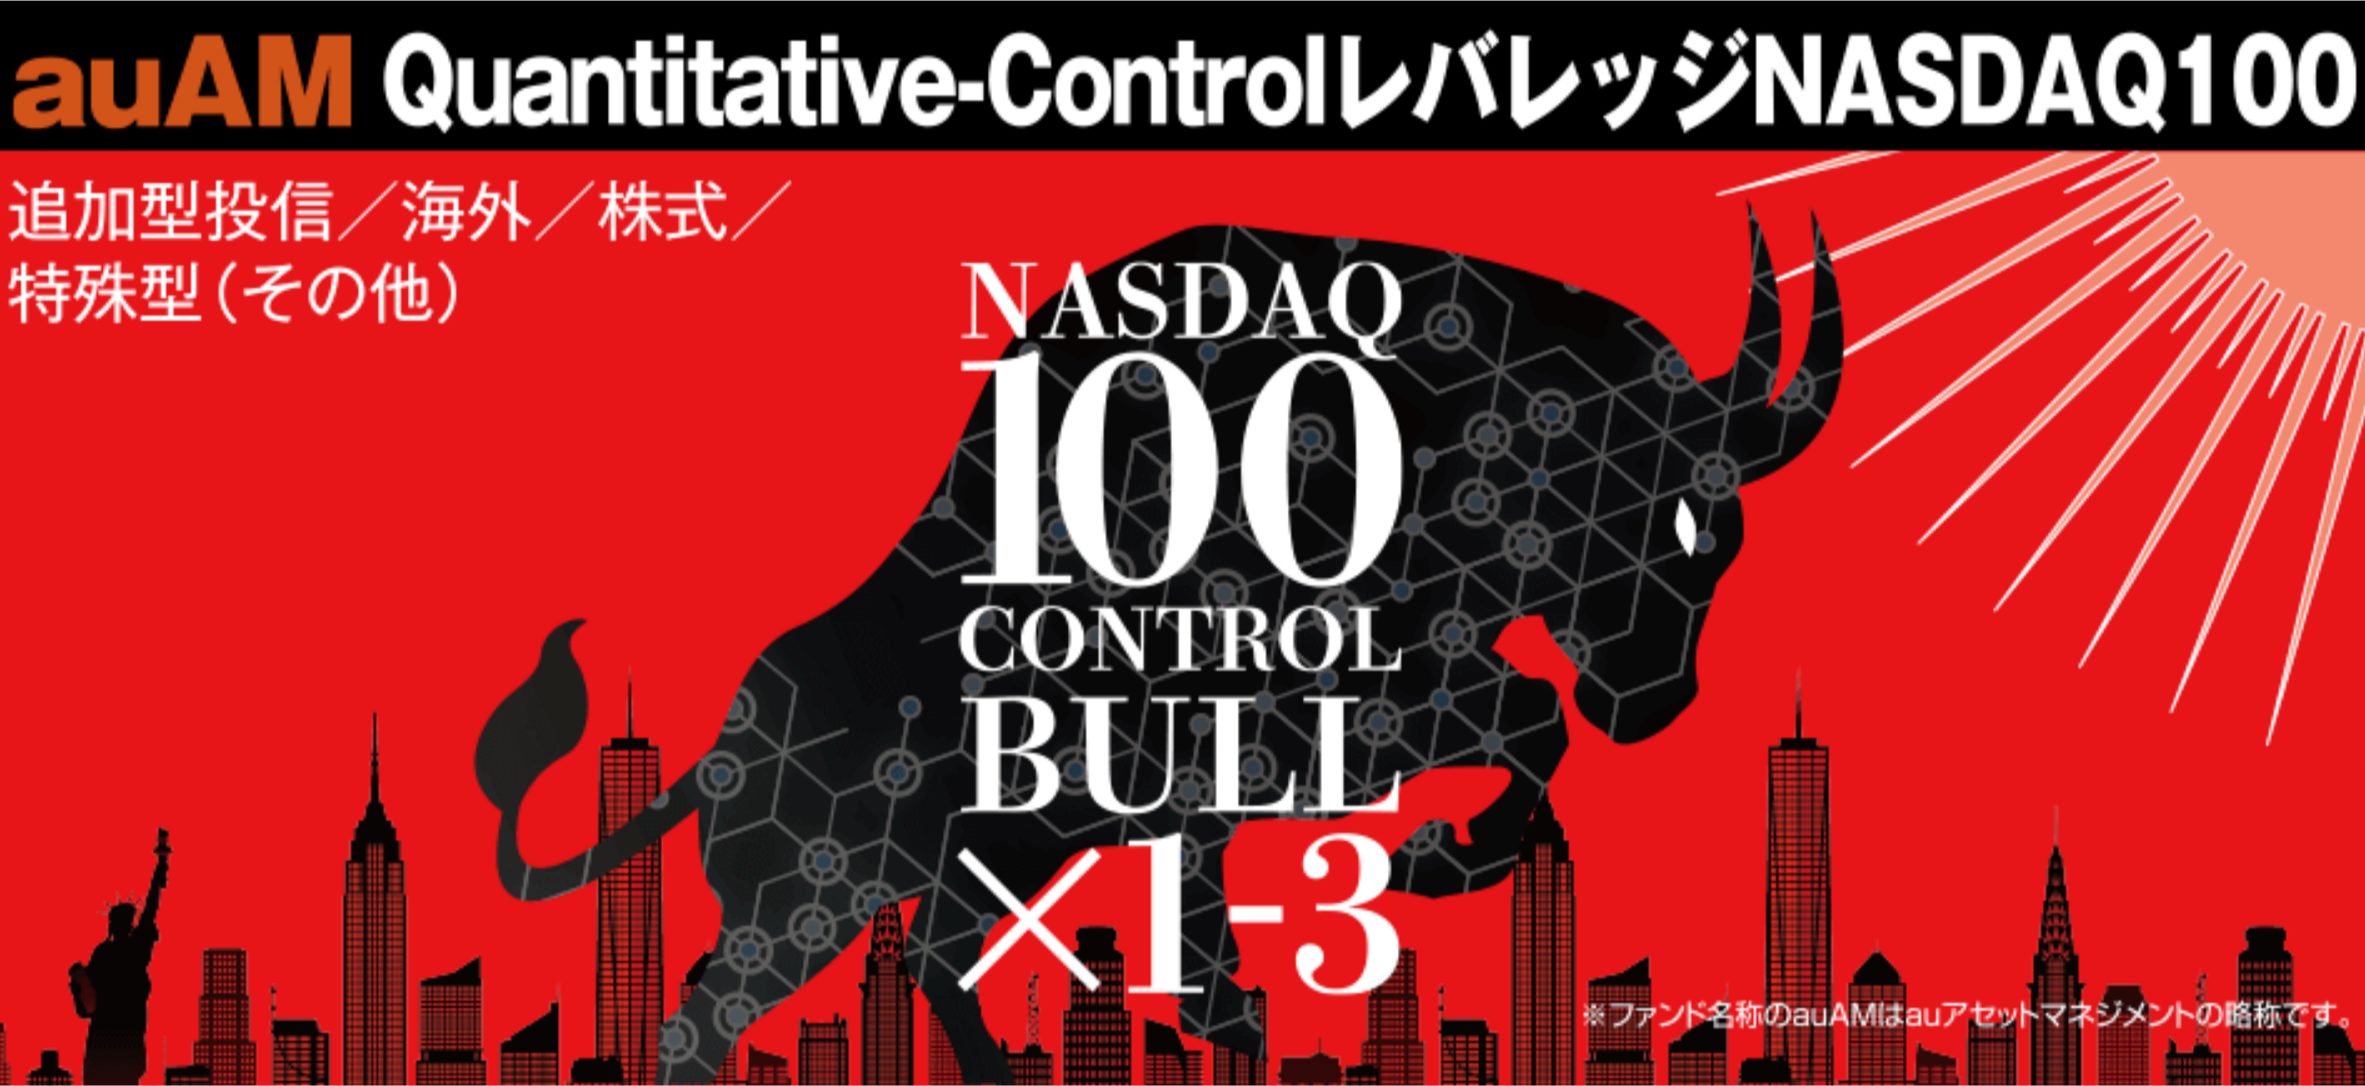 auAM Quantitative-Controlレバレッジ NASDAQ100の評価は？